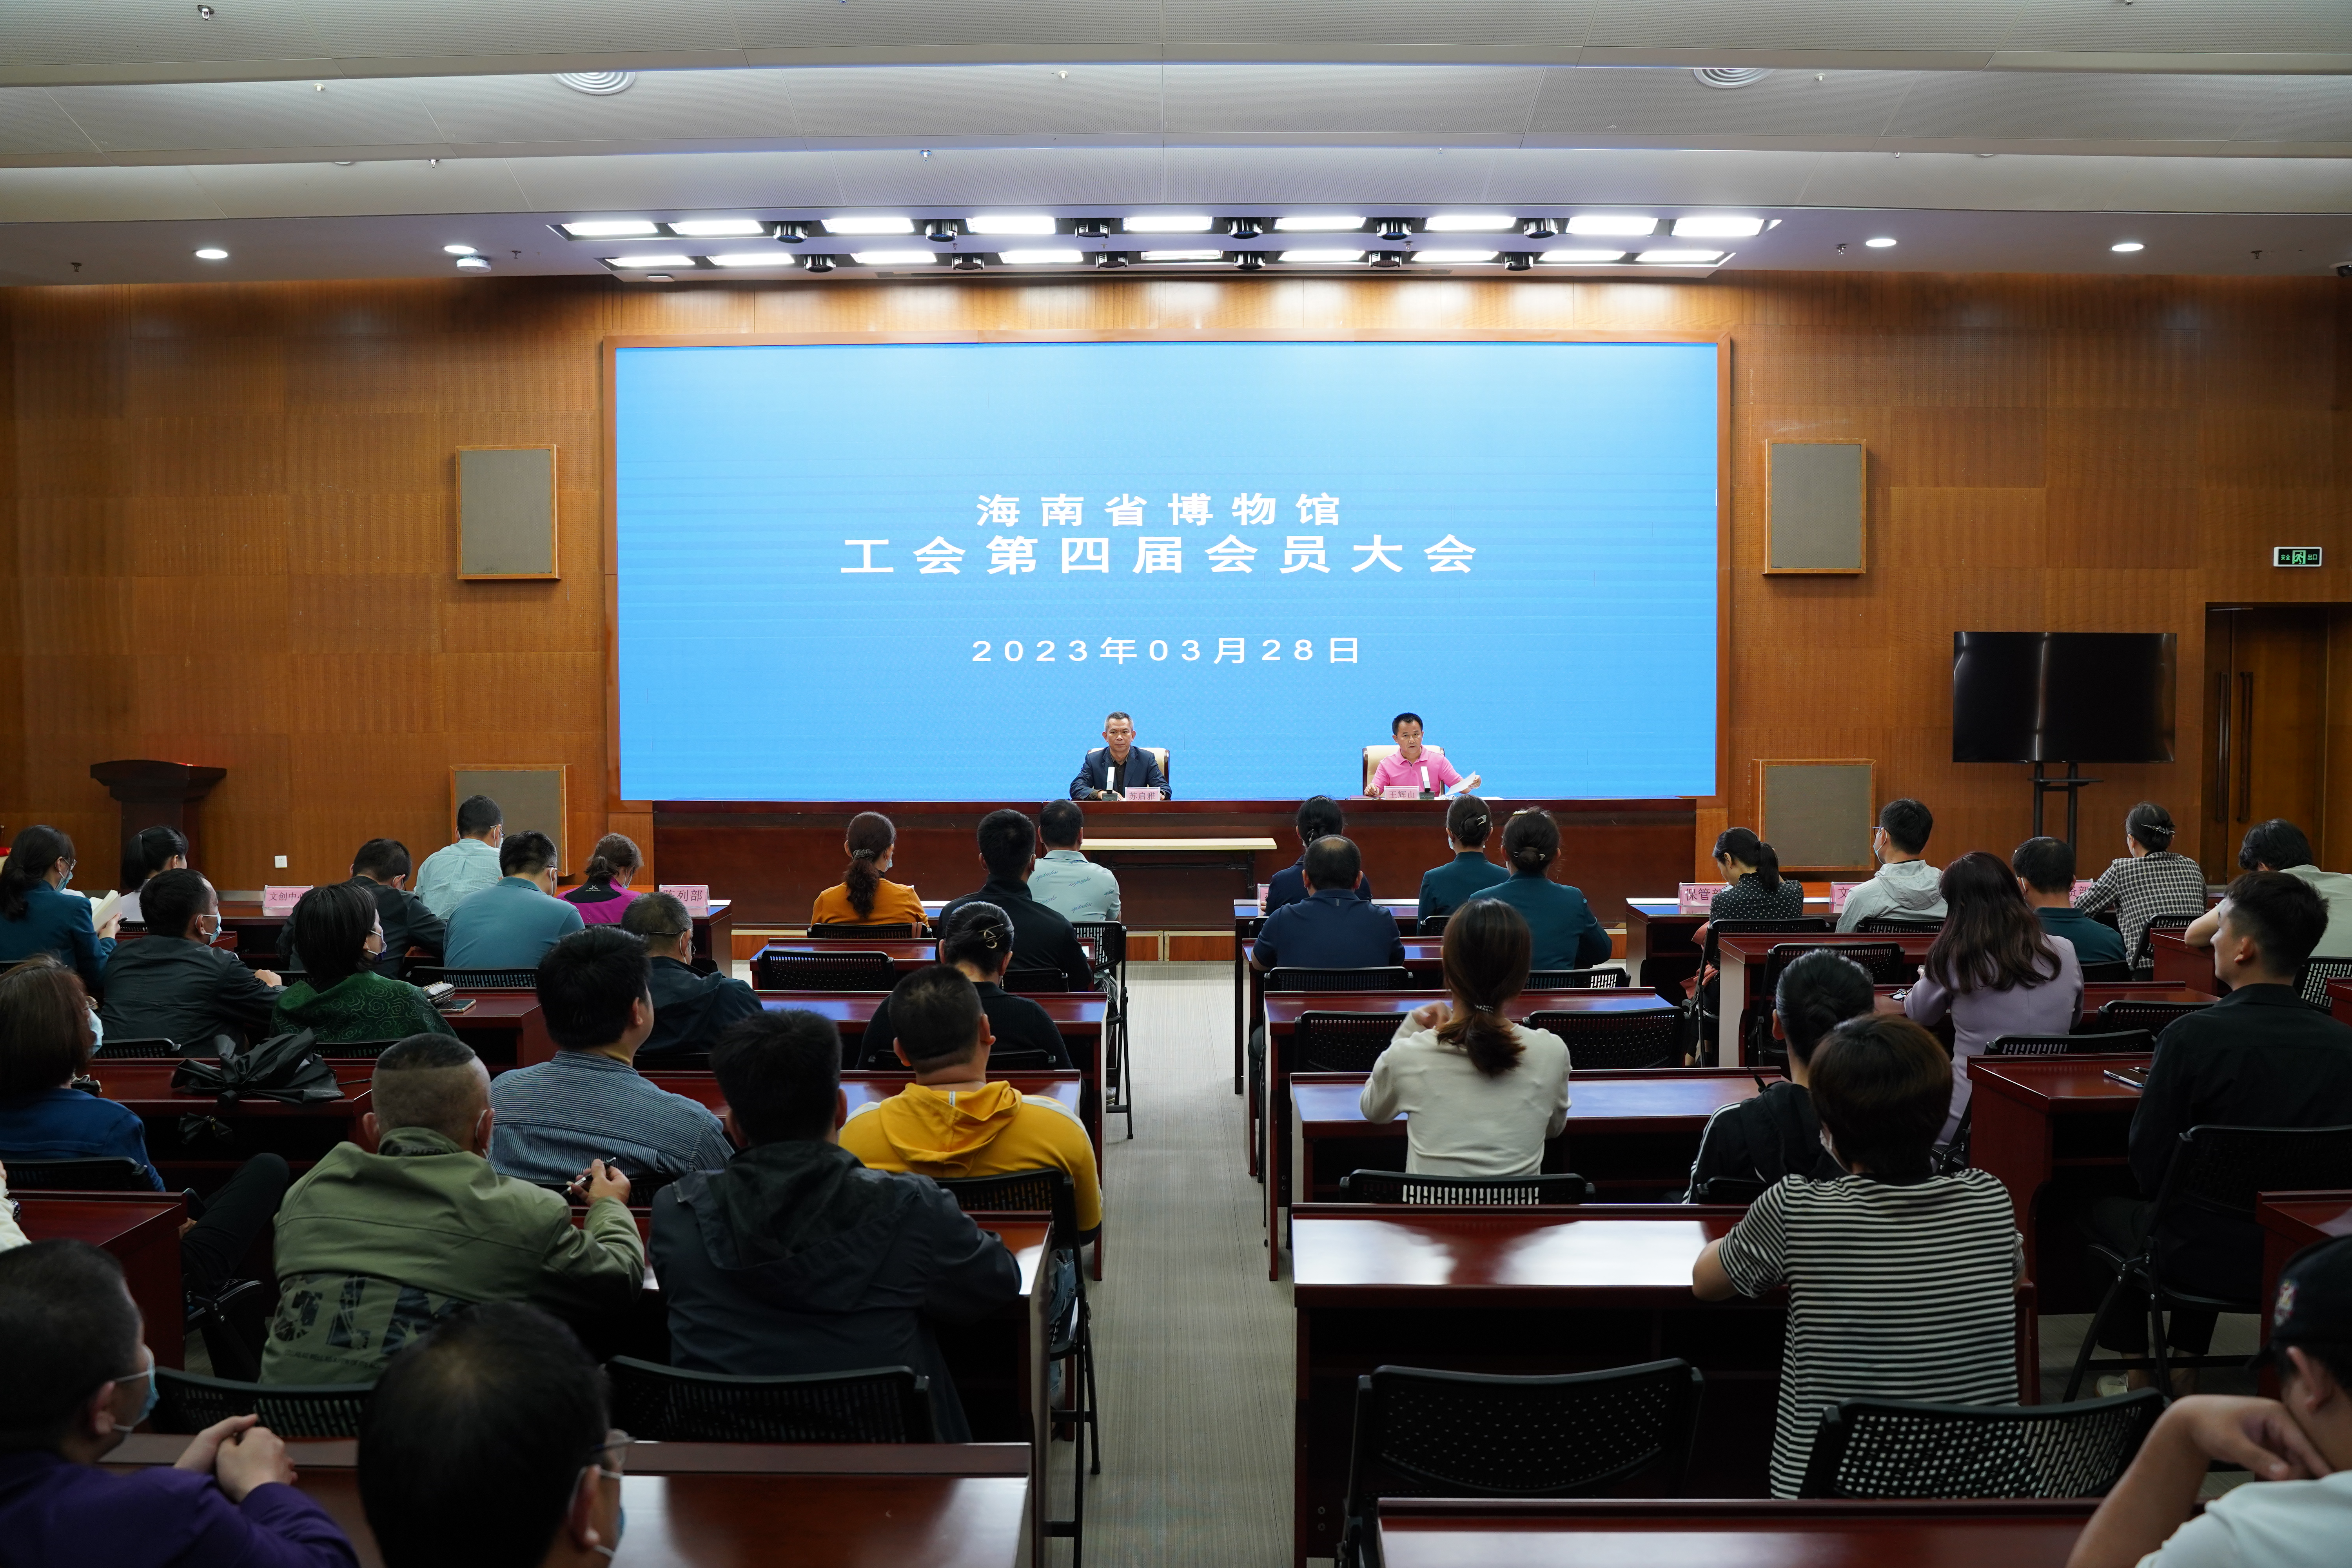 海南省博物馆召开工会第四届会员大会